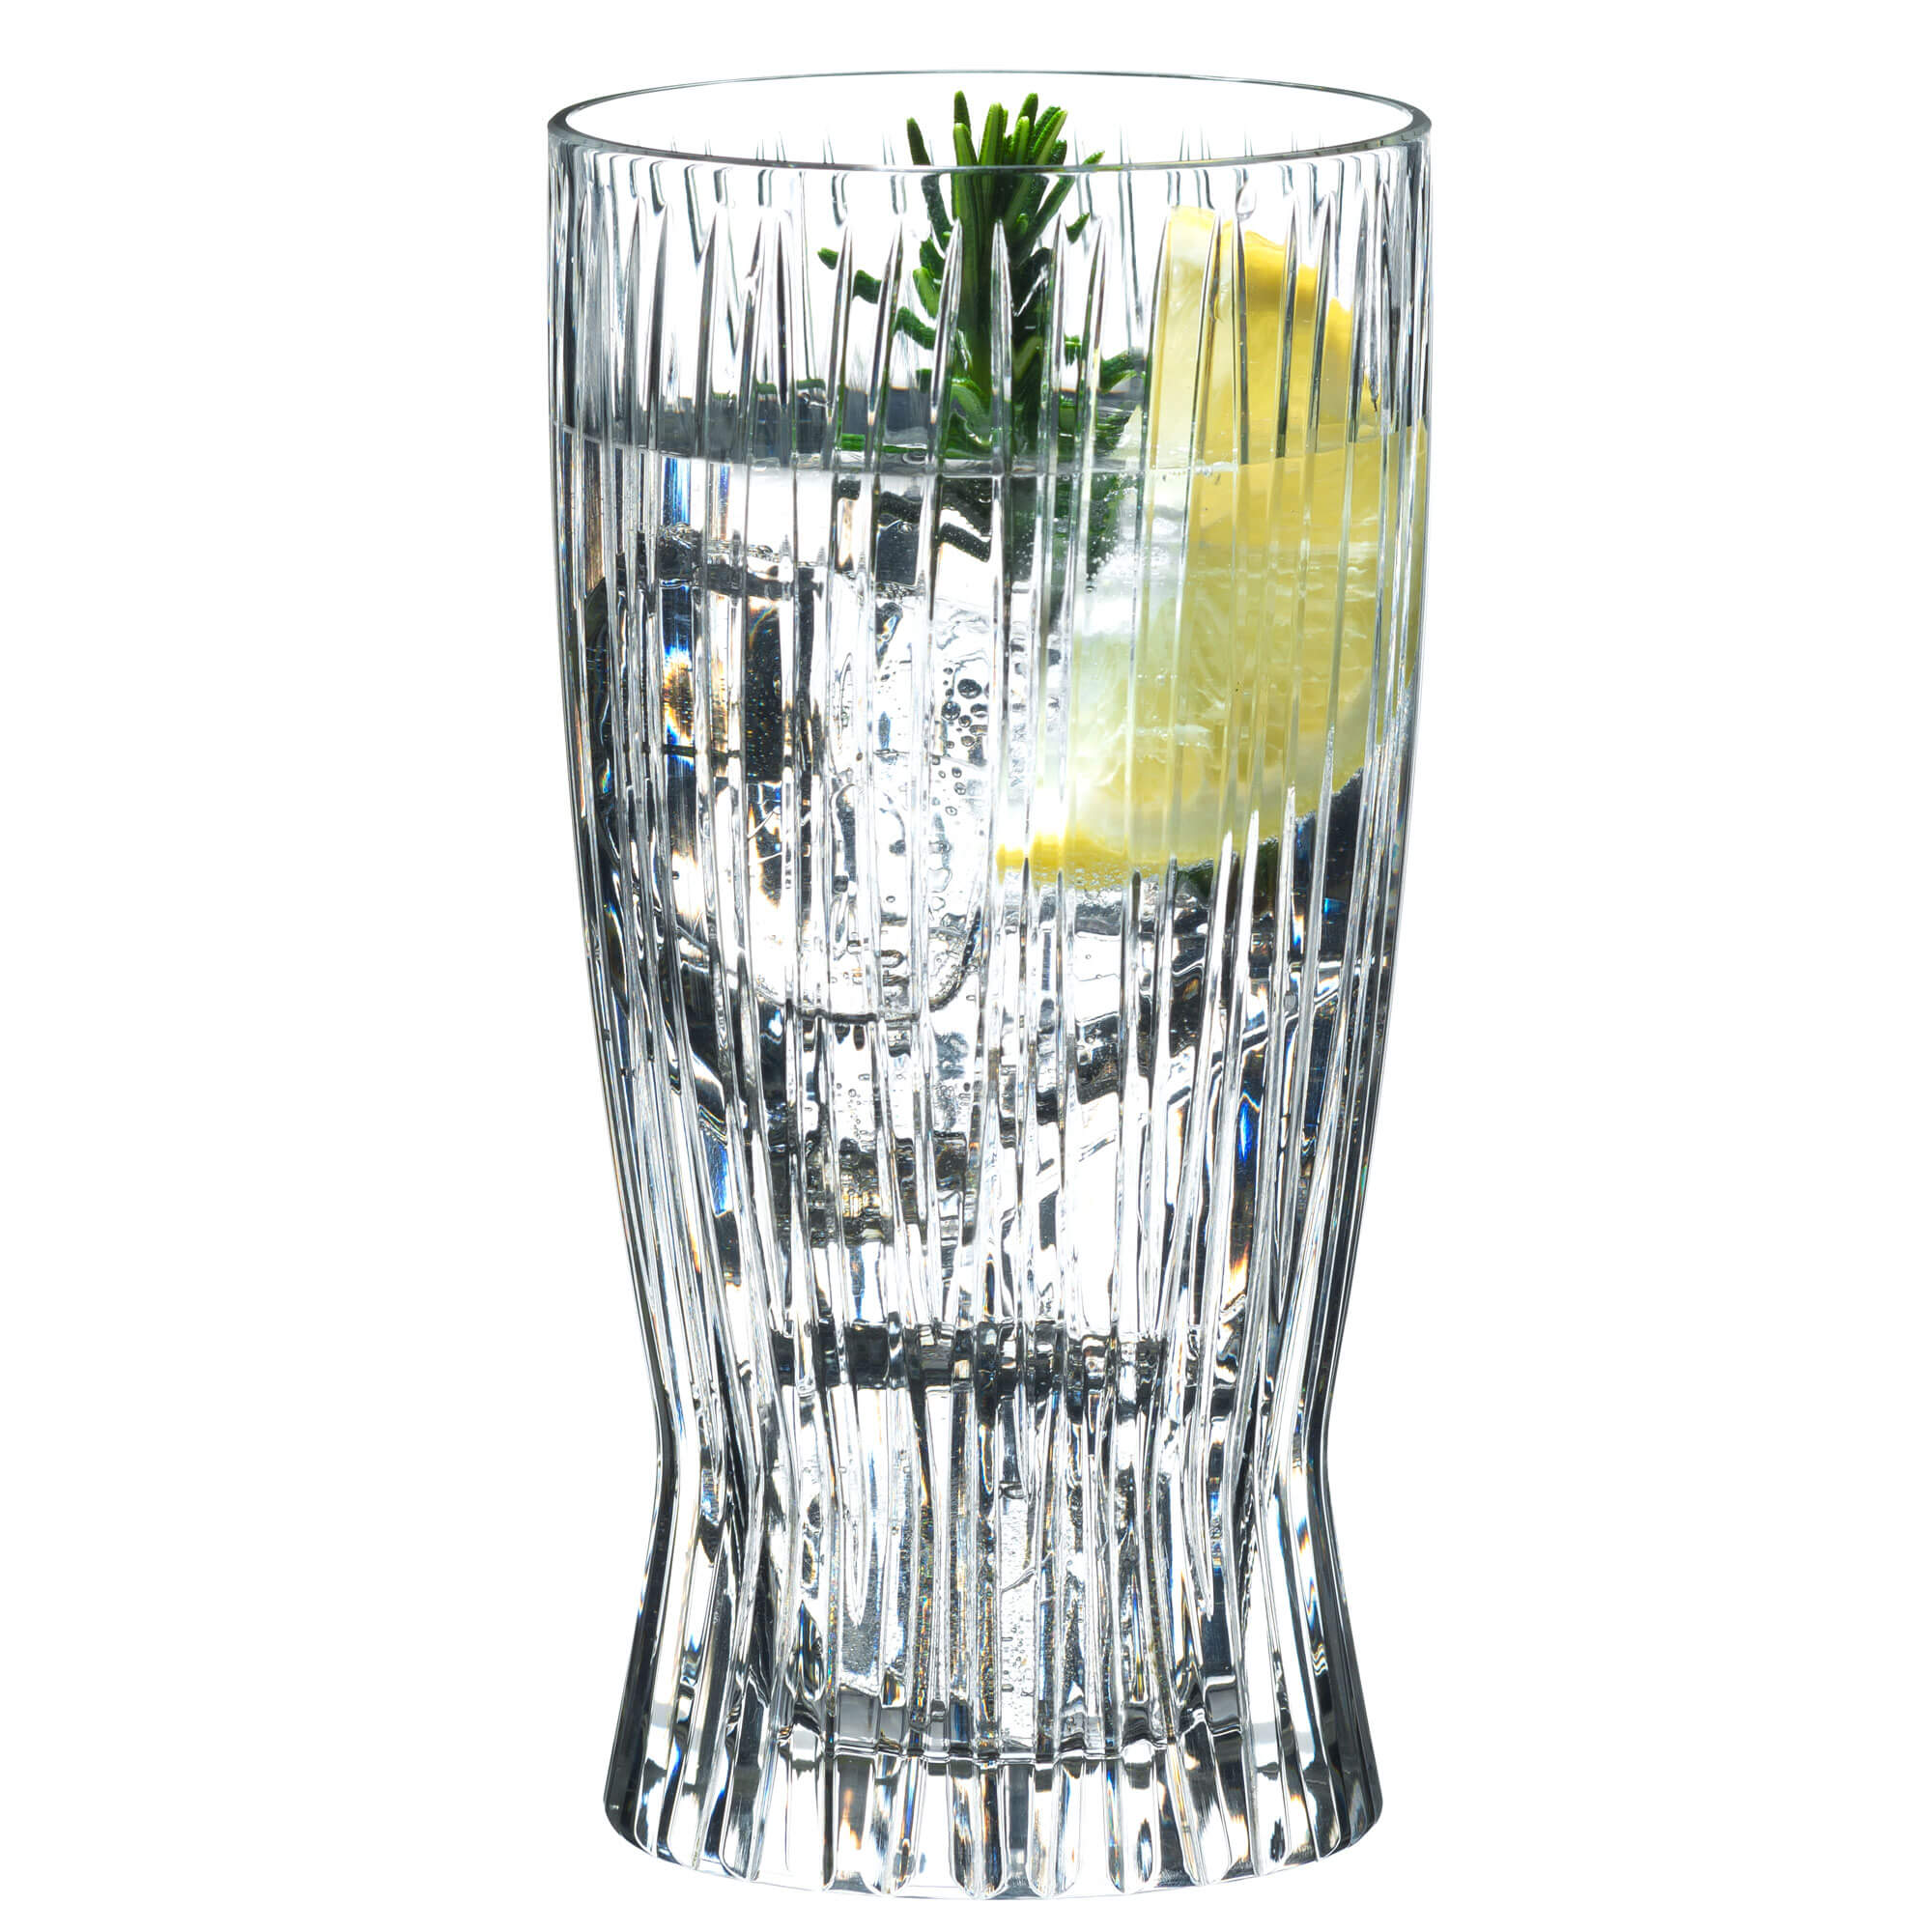 Longdrink glass, Riedel - 375ml (2 pcs.)